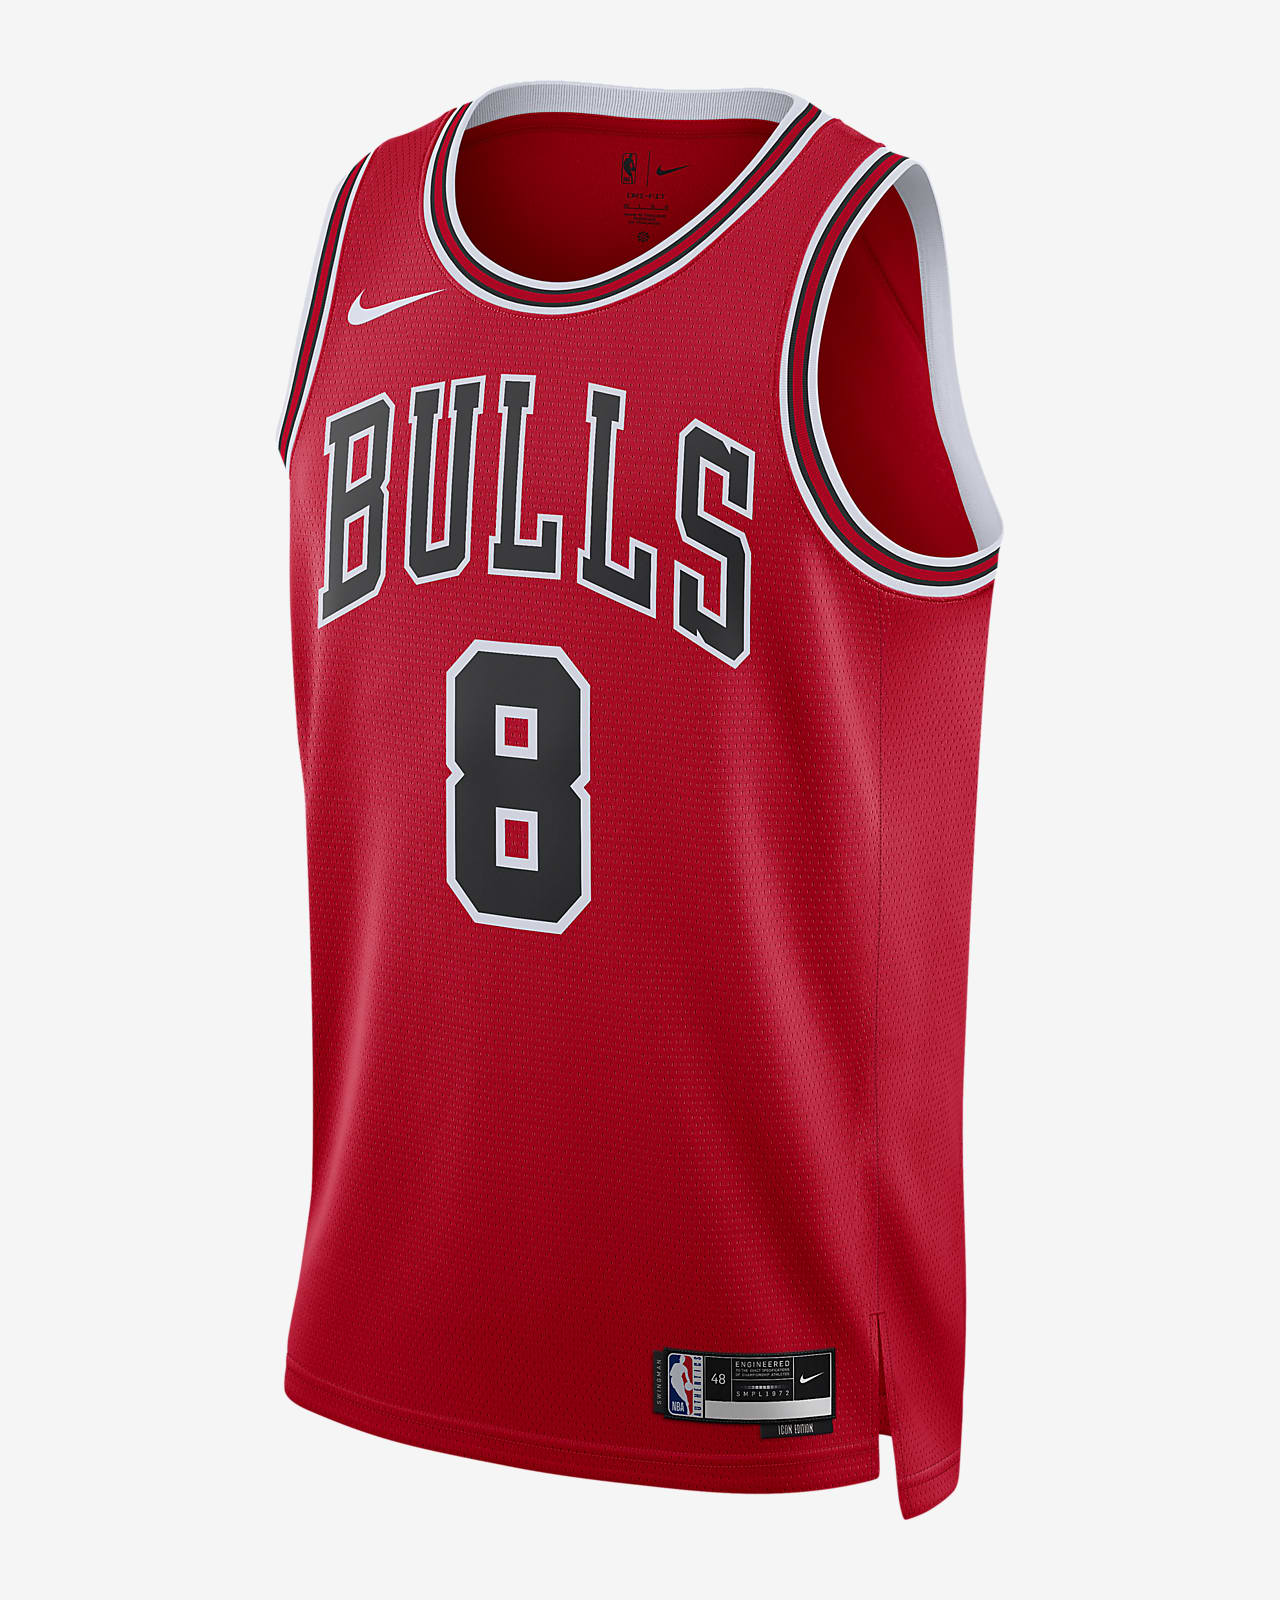 2022/23 赛季芝加哥公牛队 Icon Edition Nike Dri-FIT NBA Swingman Jersey 男子速干球衣